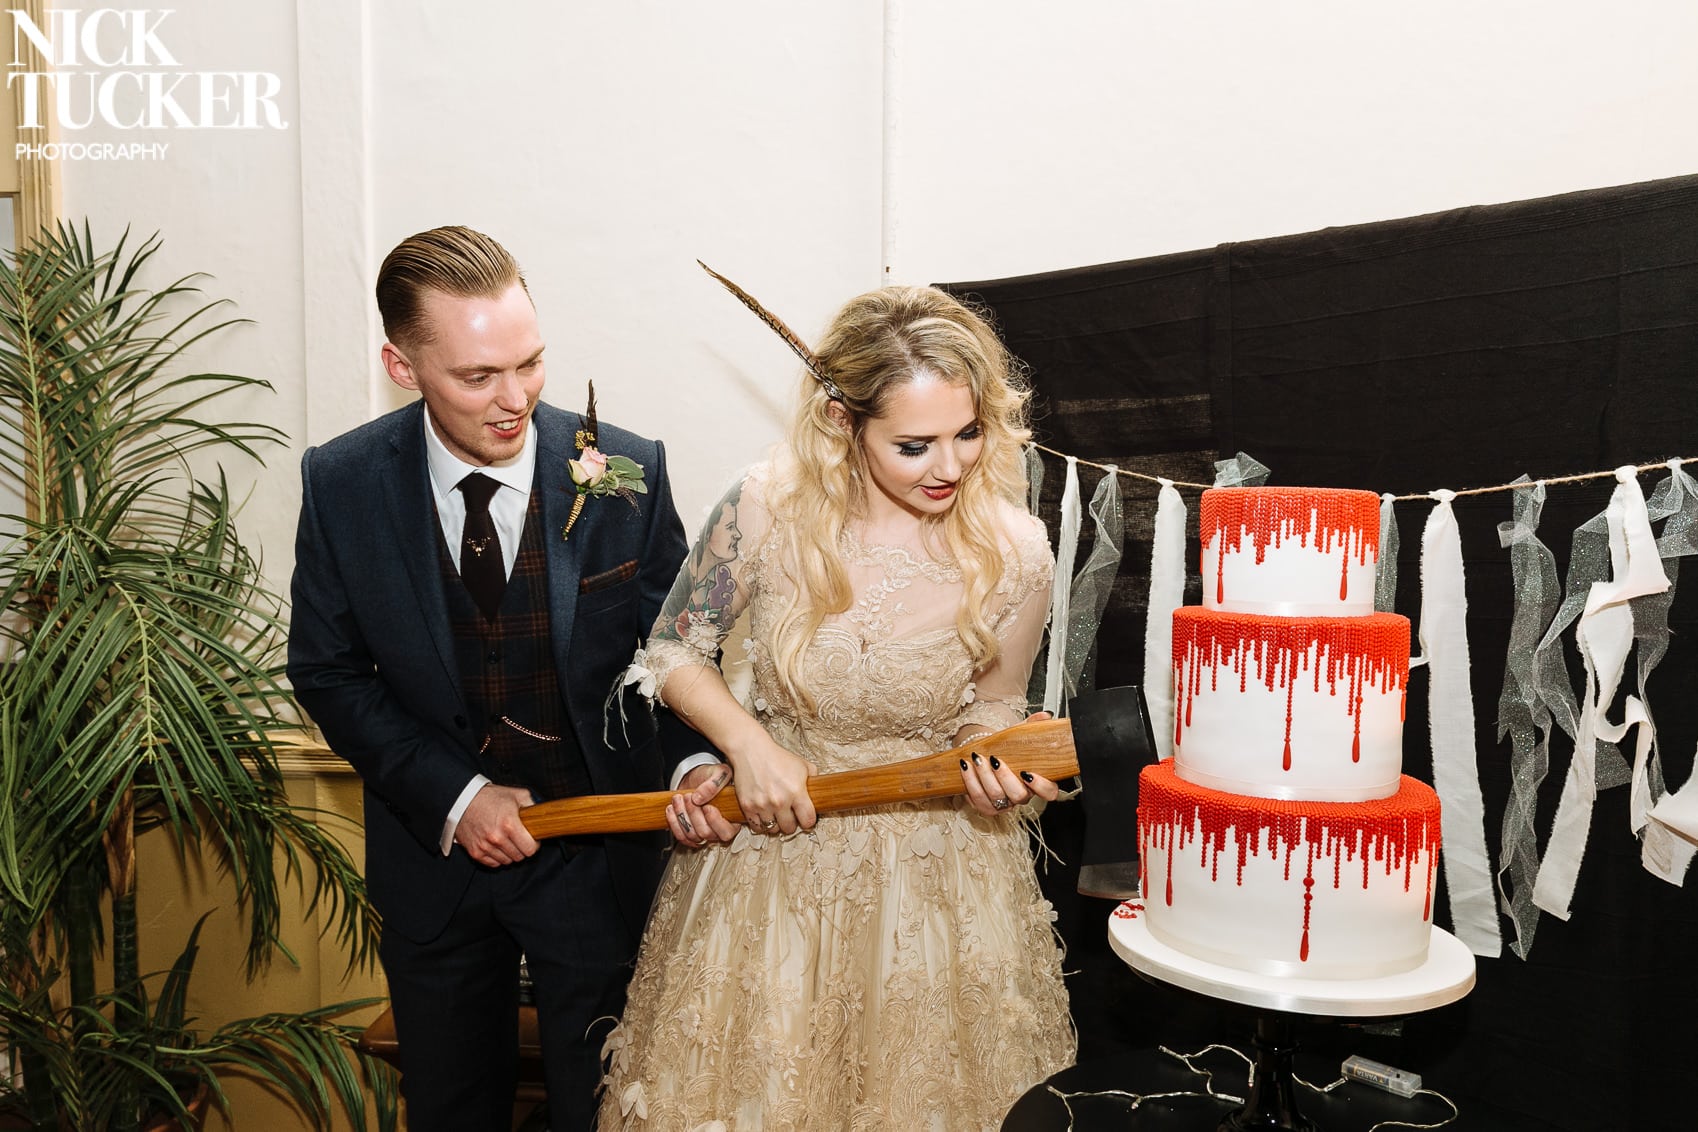 halloween wedding cake